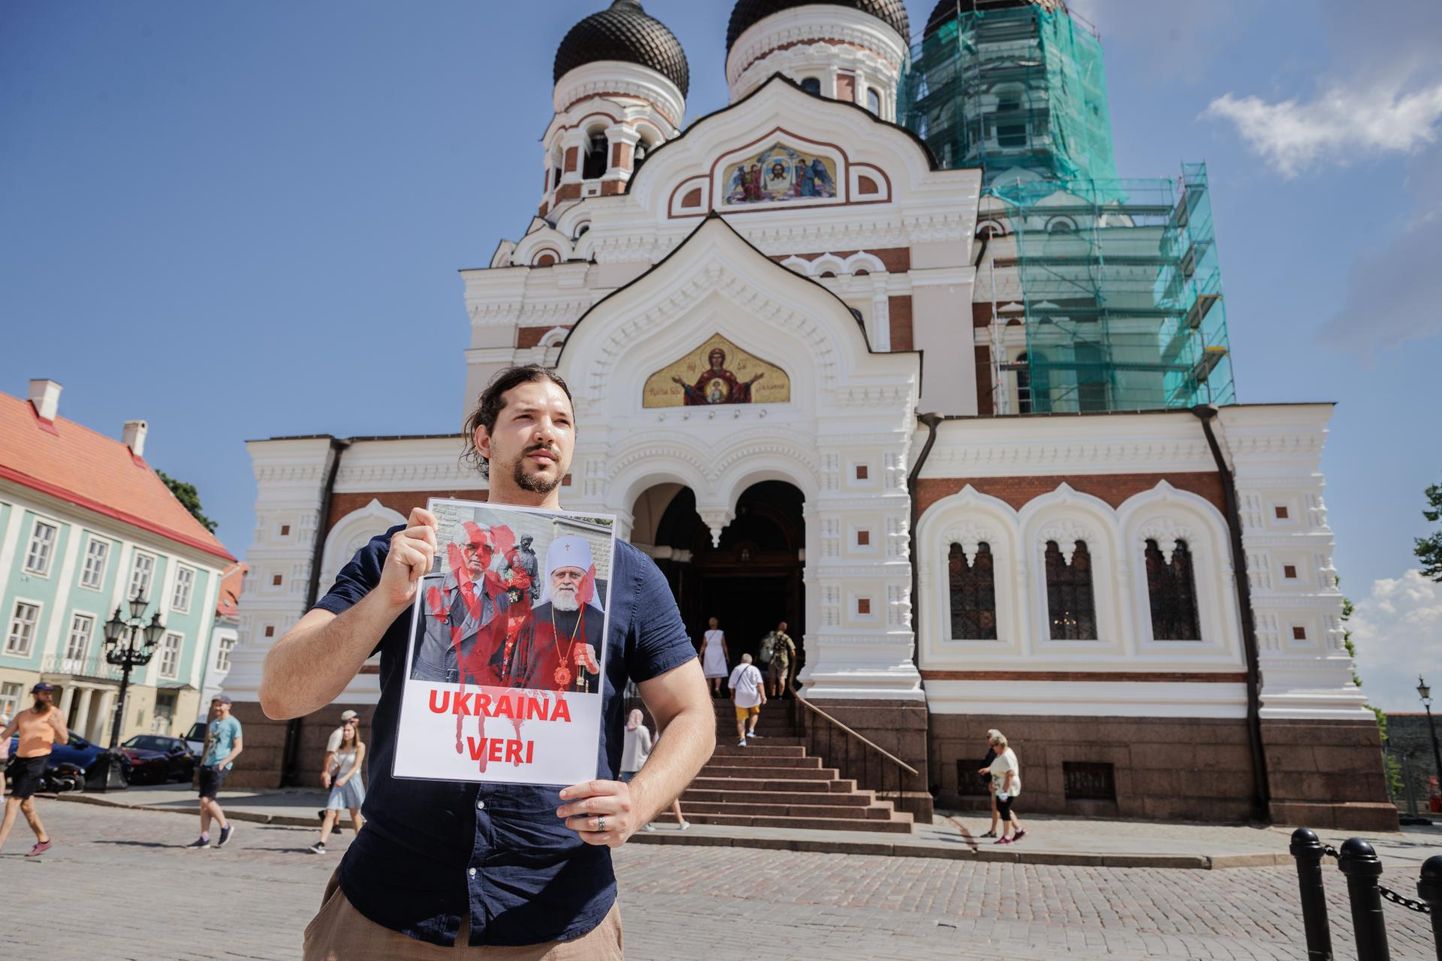 Maikuus käis Joosua Raave Nevski katedraali ees (pilt on tehtud juunis) protestimas «verise» plakatiga, millele on kirjutatud «Ukraina veri» ja peal foto, millel metropoliit Eugeni poseerib pronkssõduri taustal koos Venemaa suursaadikuga.